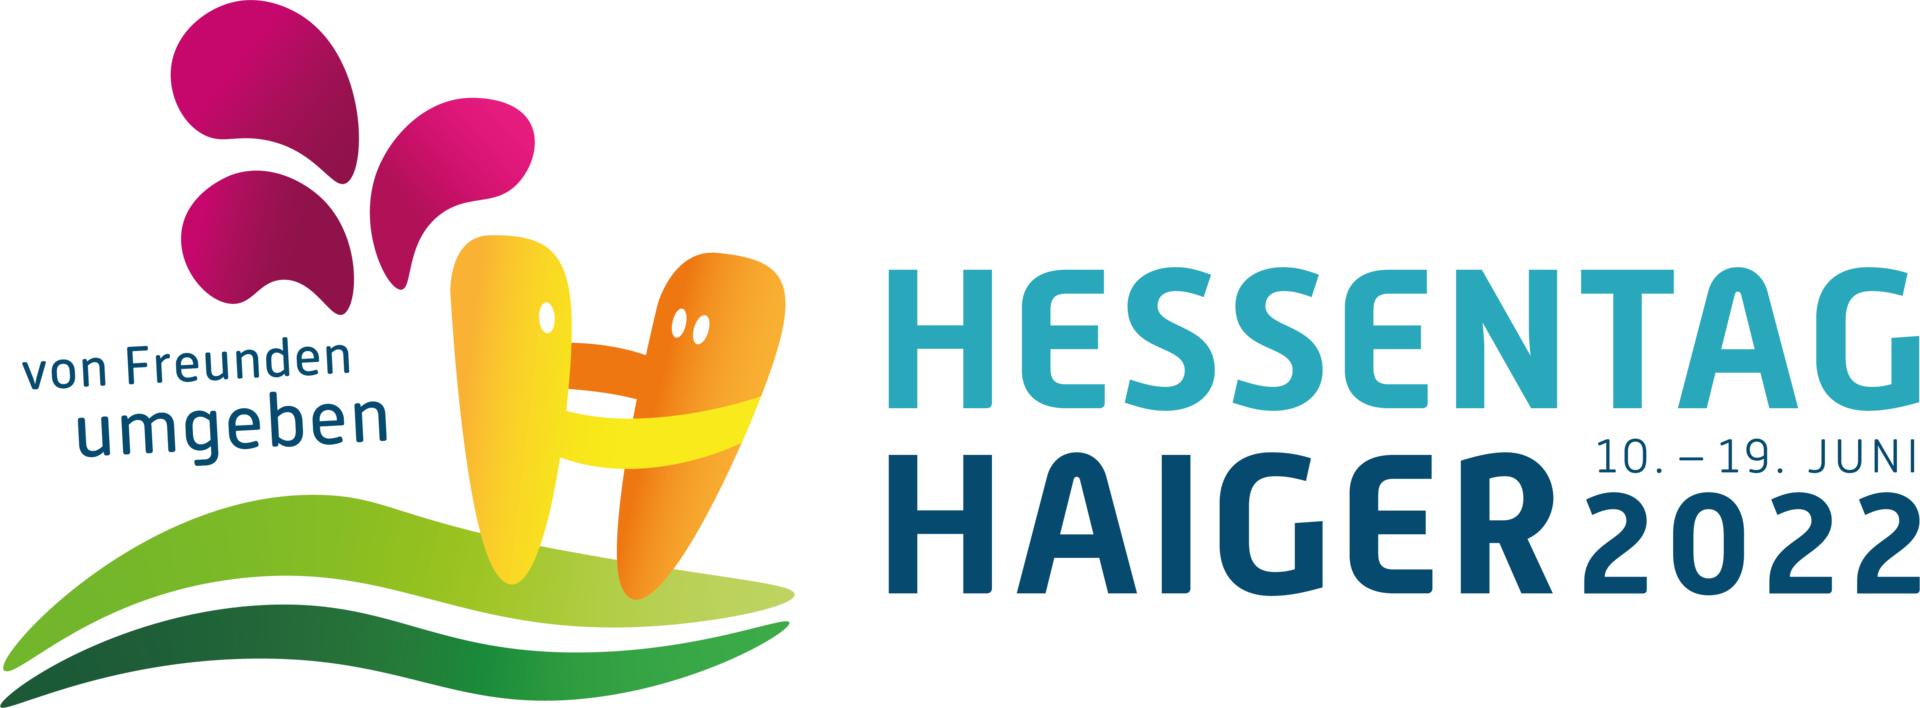 Hessentag